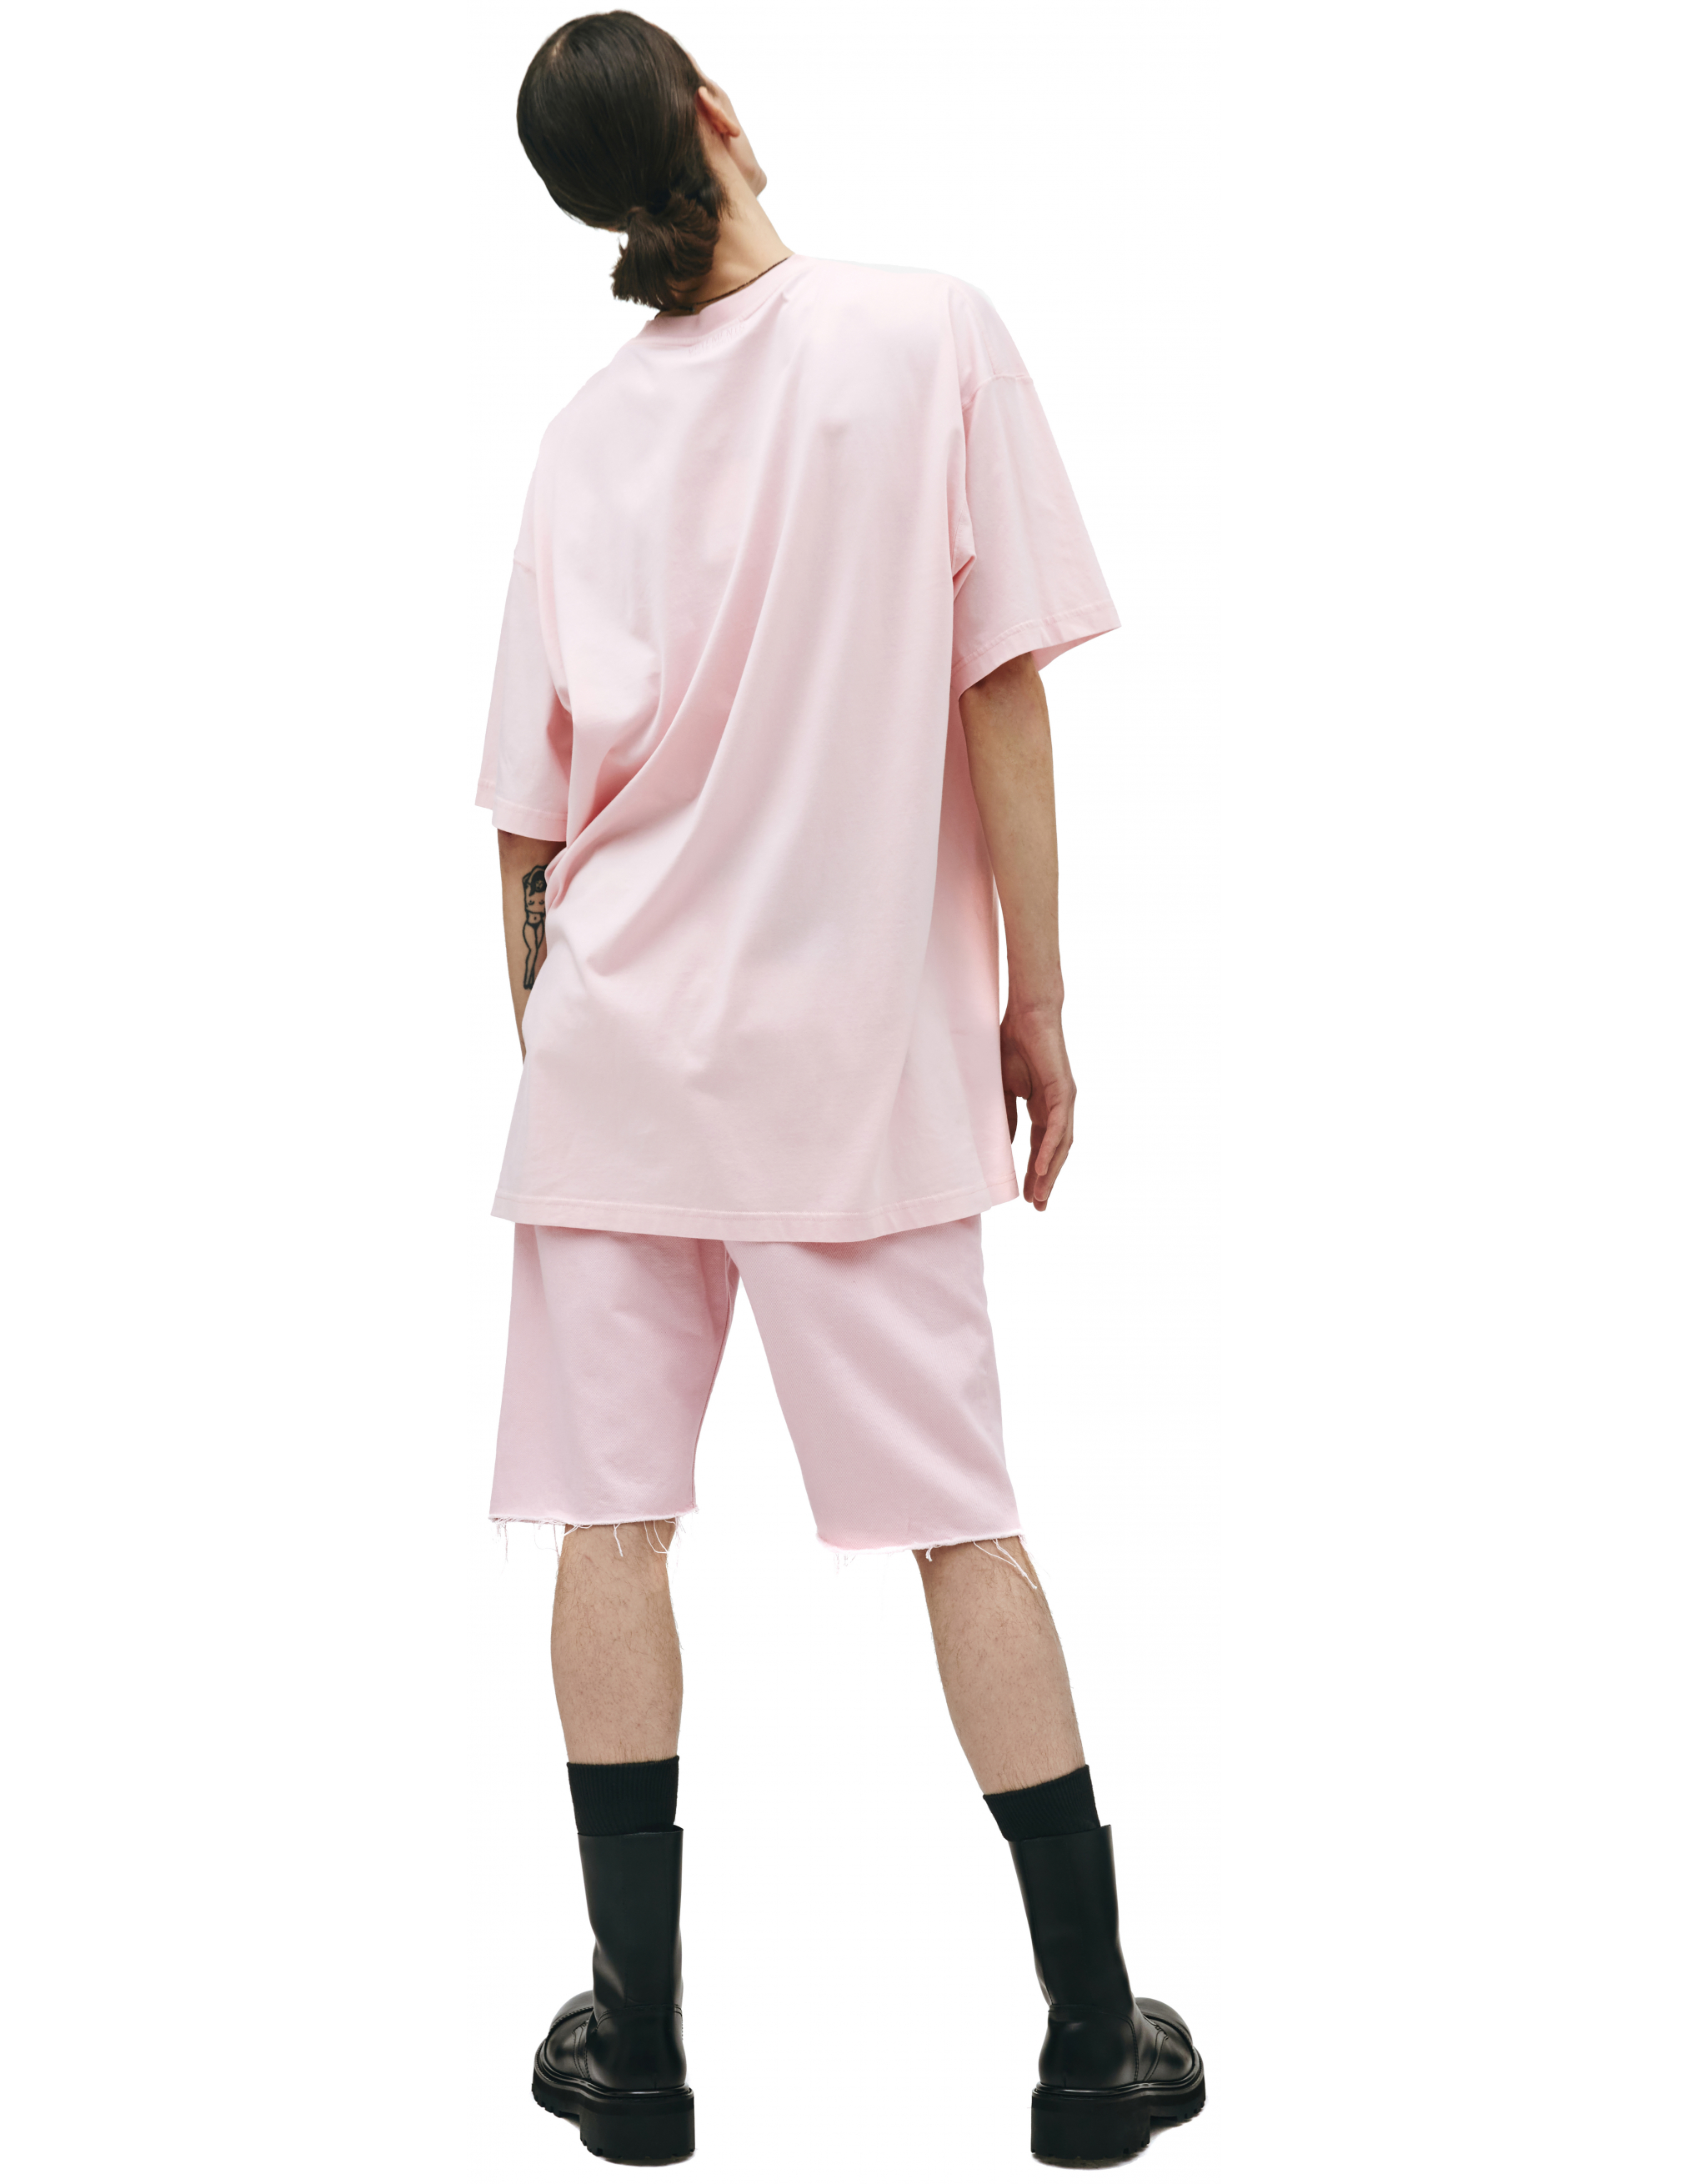 Джинсовые шорты розового цвета - Vetements ME51PA120P/2803 Фото 2